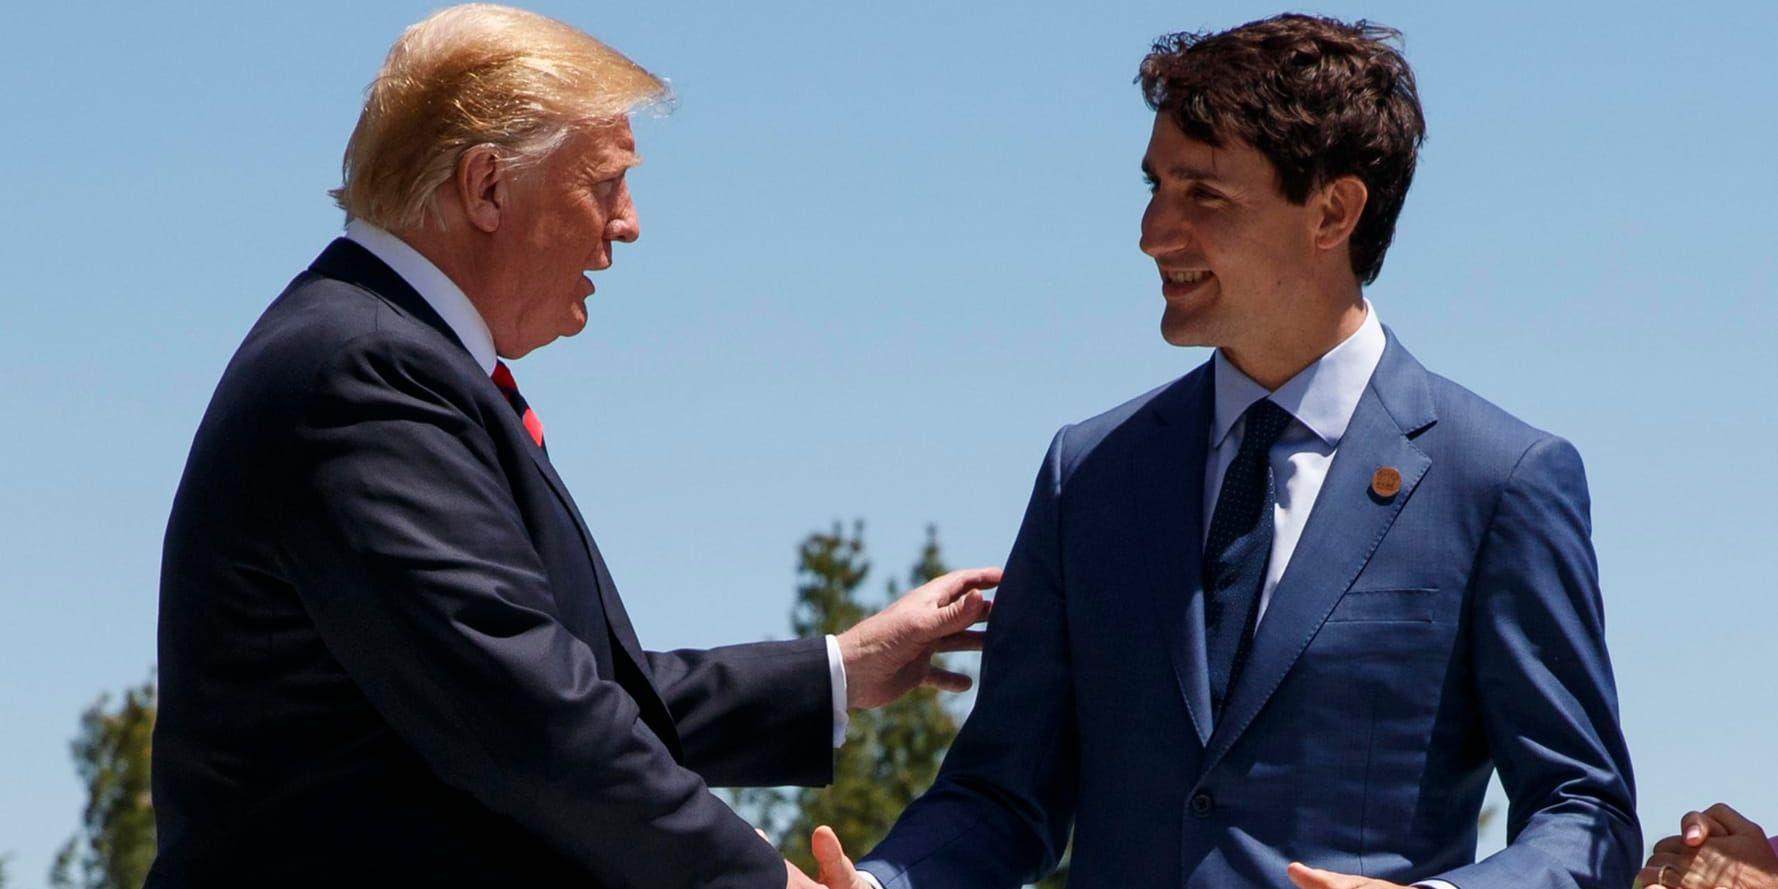 Majoriteten av kanadensare och amerikaner anser att Justin Trudeau har hanterat handelsdispyten mellan länderna bäst. Arkivbild.